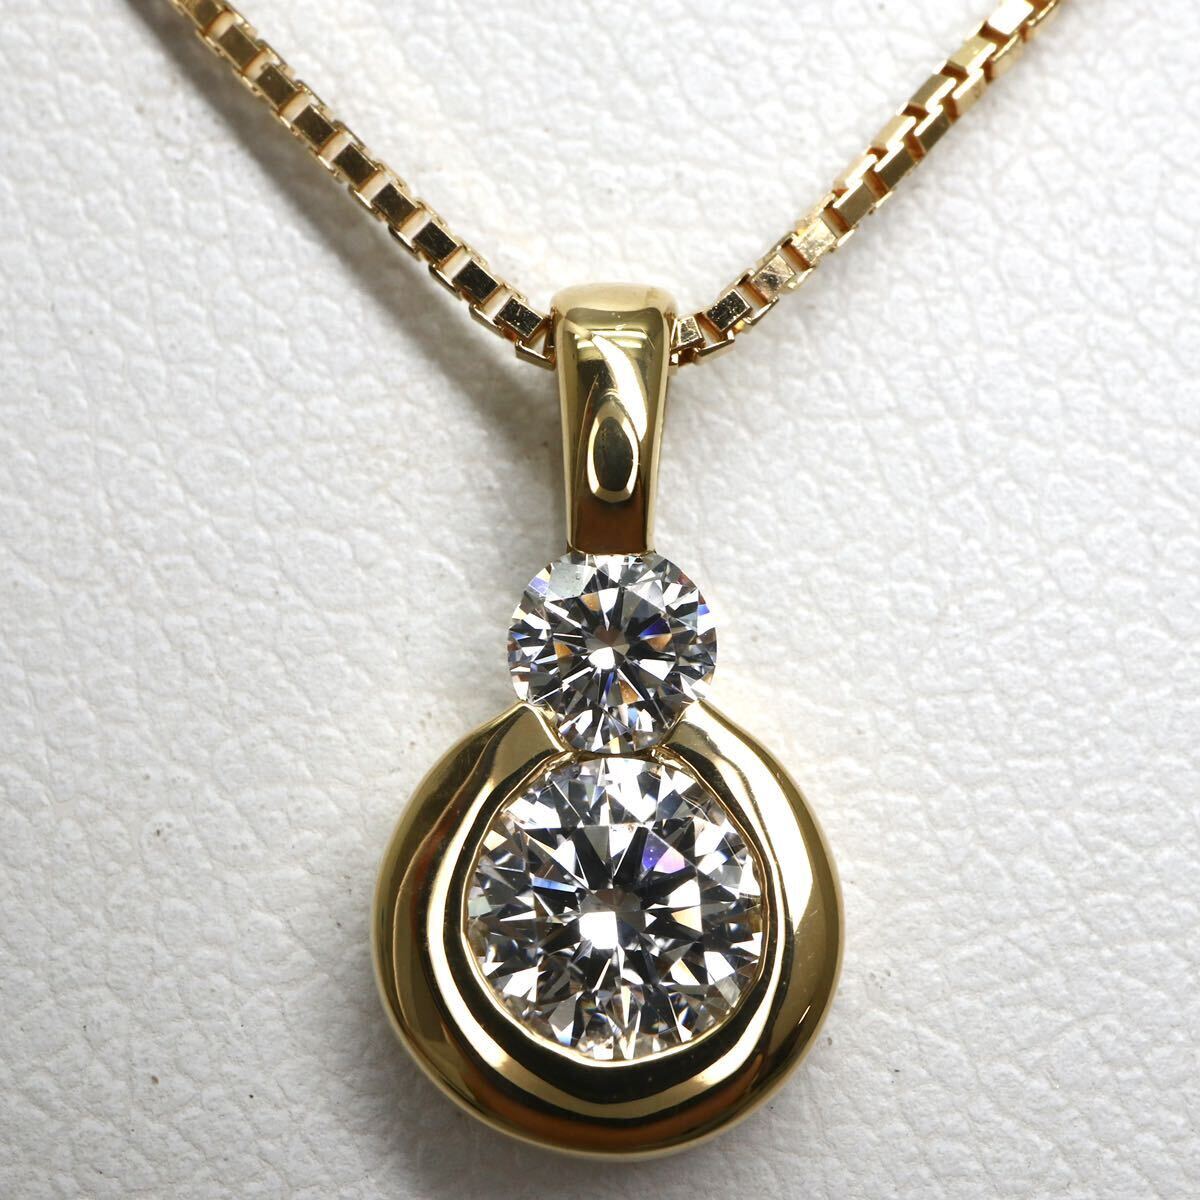 MONNICKENDAM(モニッケンダム)《K18 天然ダイヤモンドネックレス》M 0.337/0.11ct 3.5g diamond jewelry necklace ED0/ED6_画像1